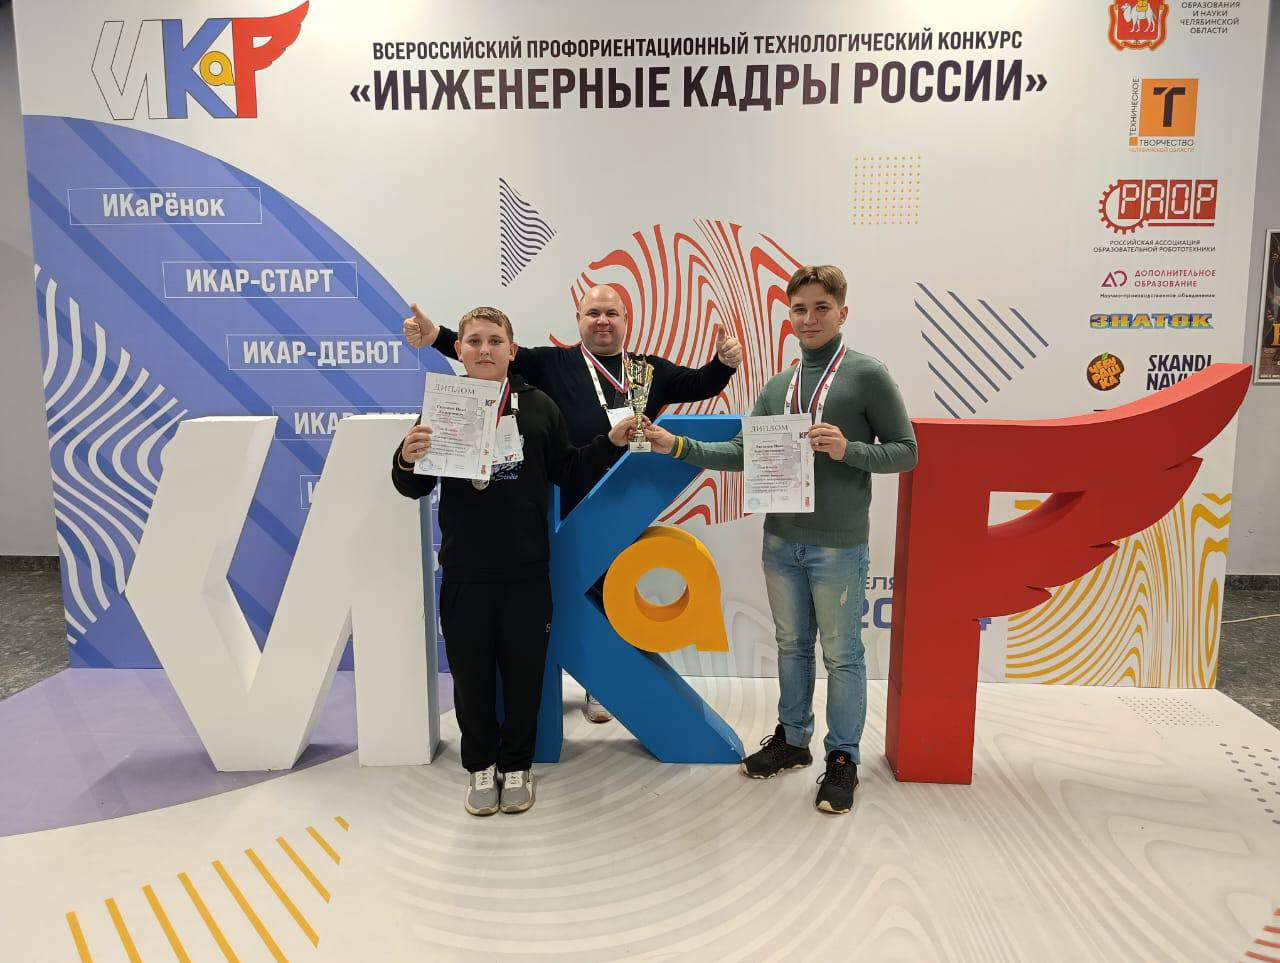 Ставропольчане отличились на всероссийском профориентационнном технологическом конкурсе